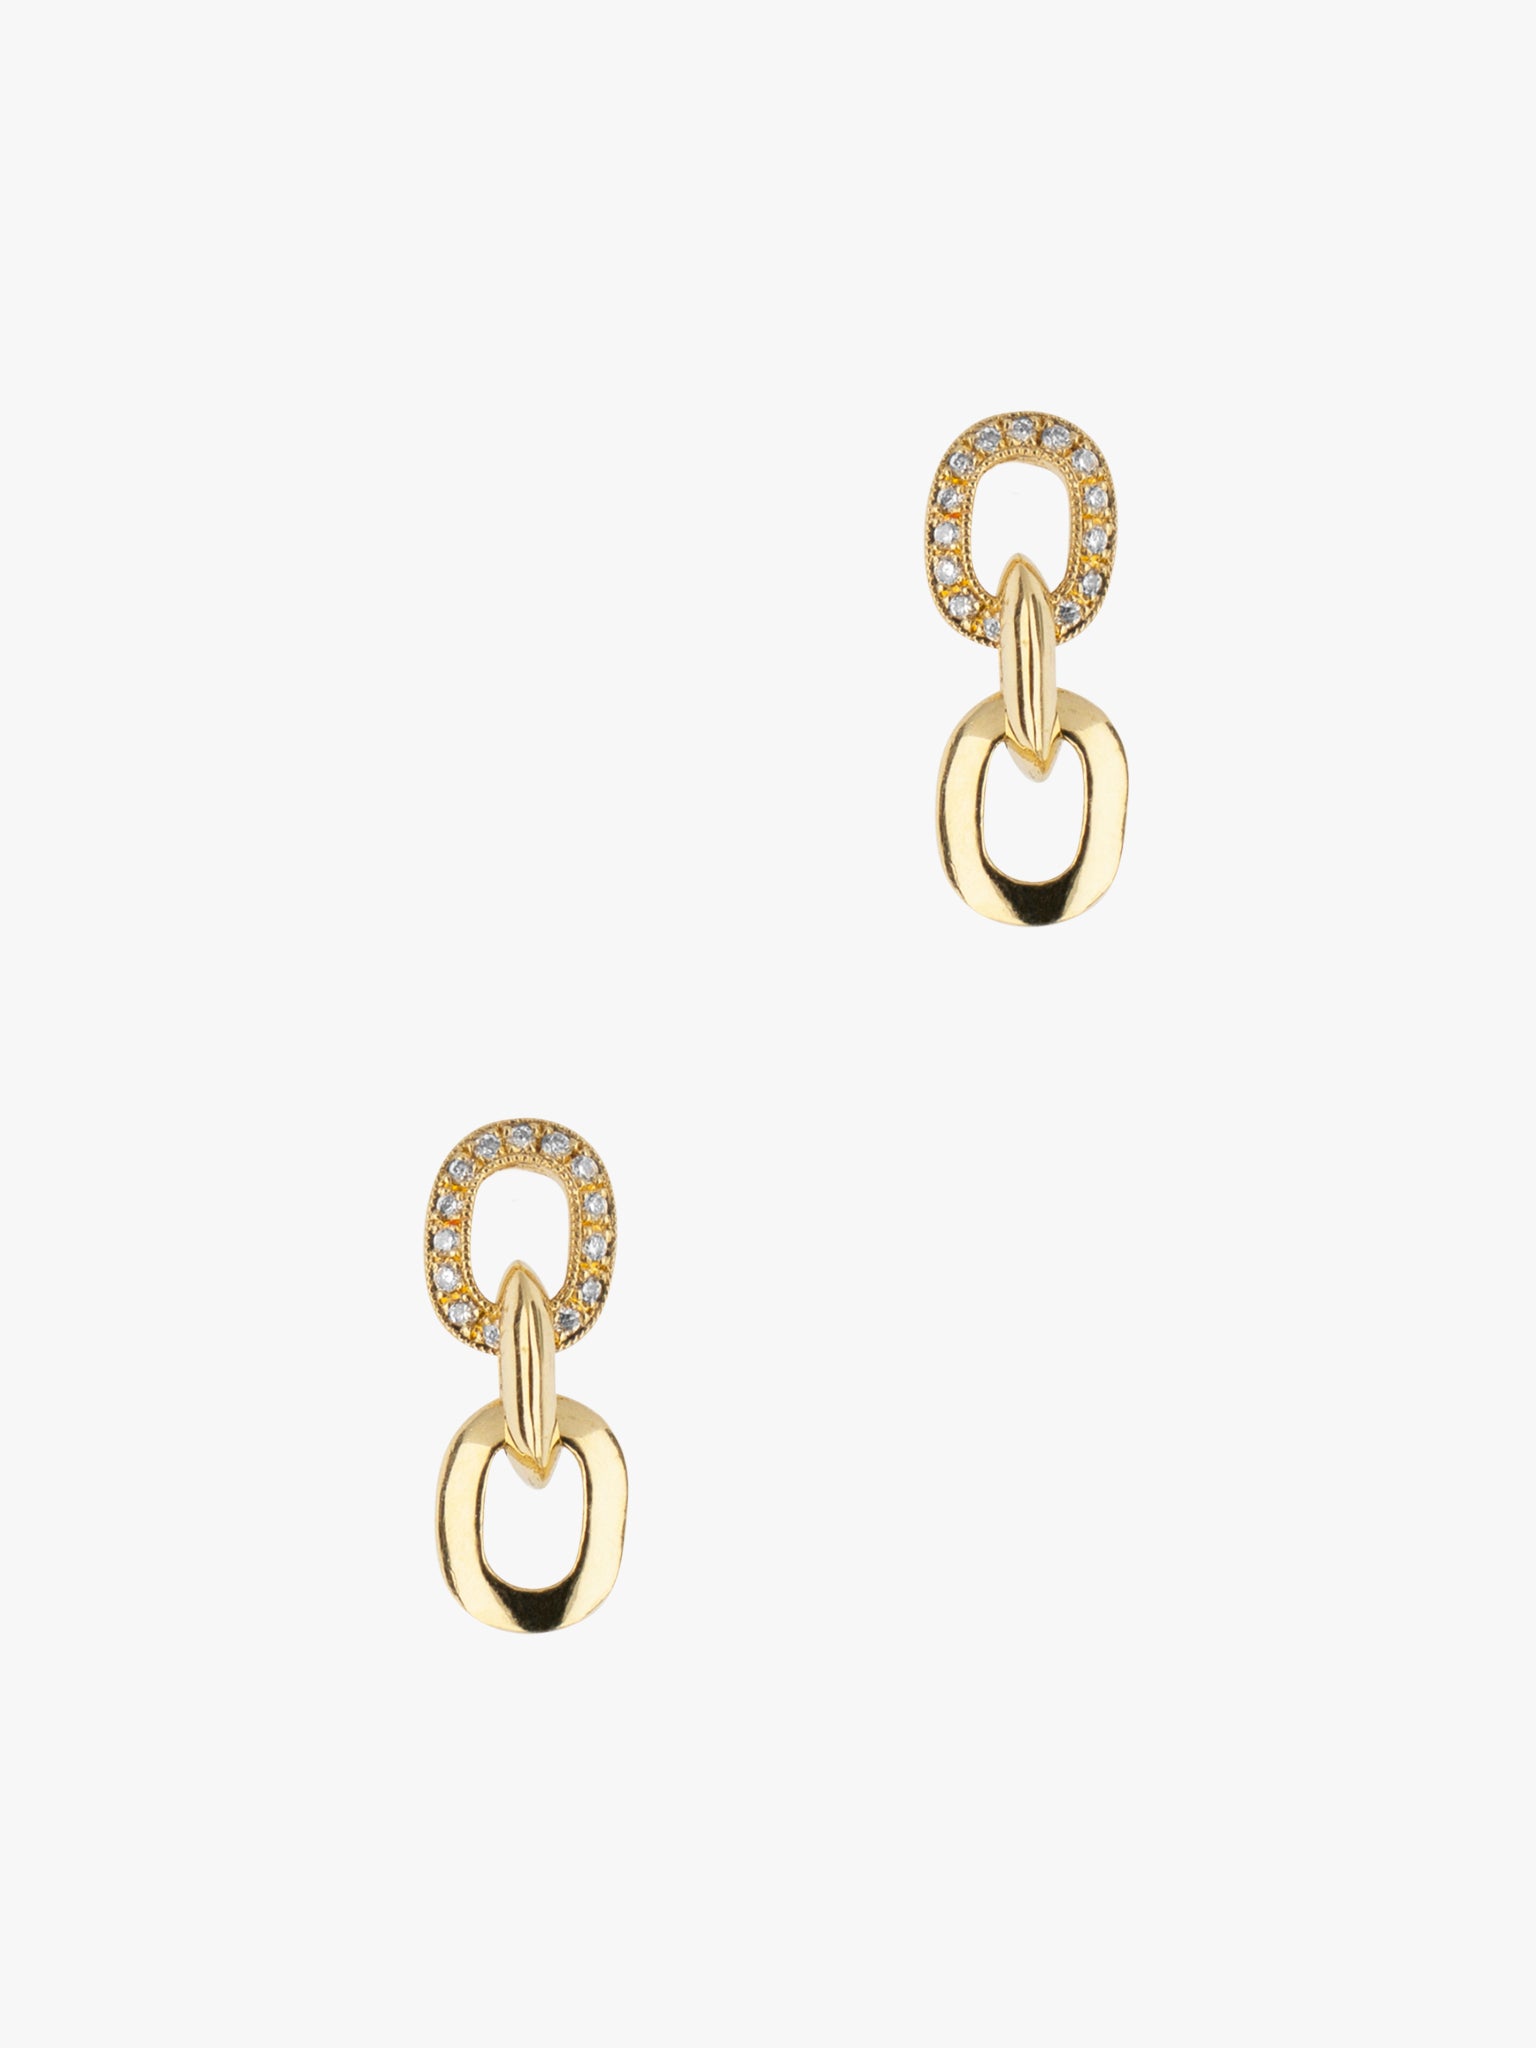 XS pavé diamond link drop earrings